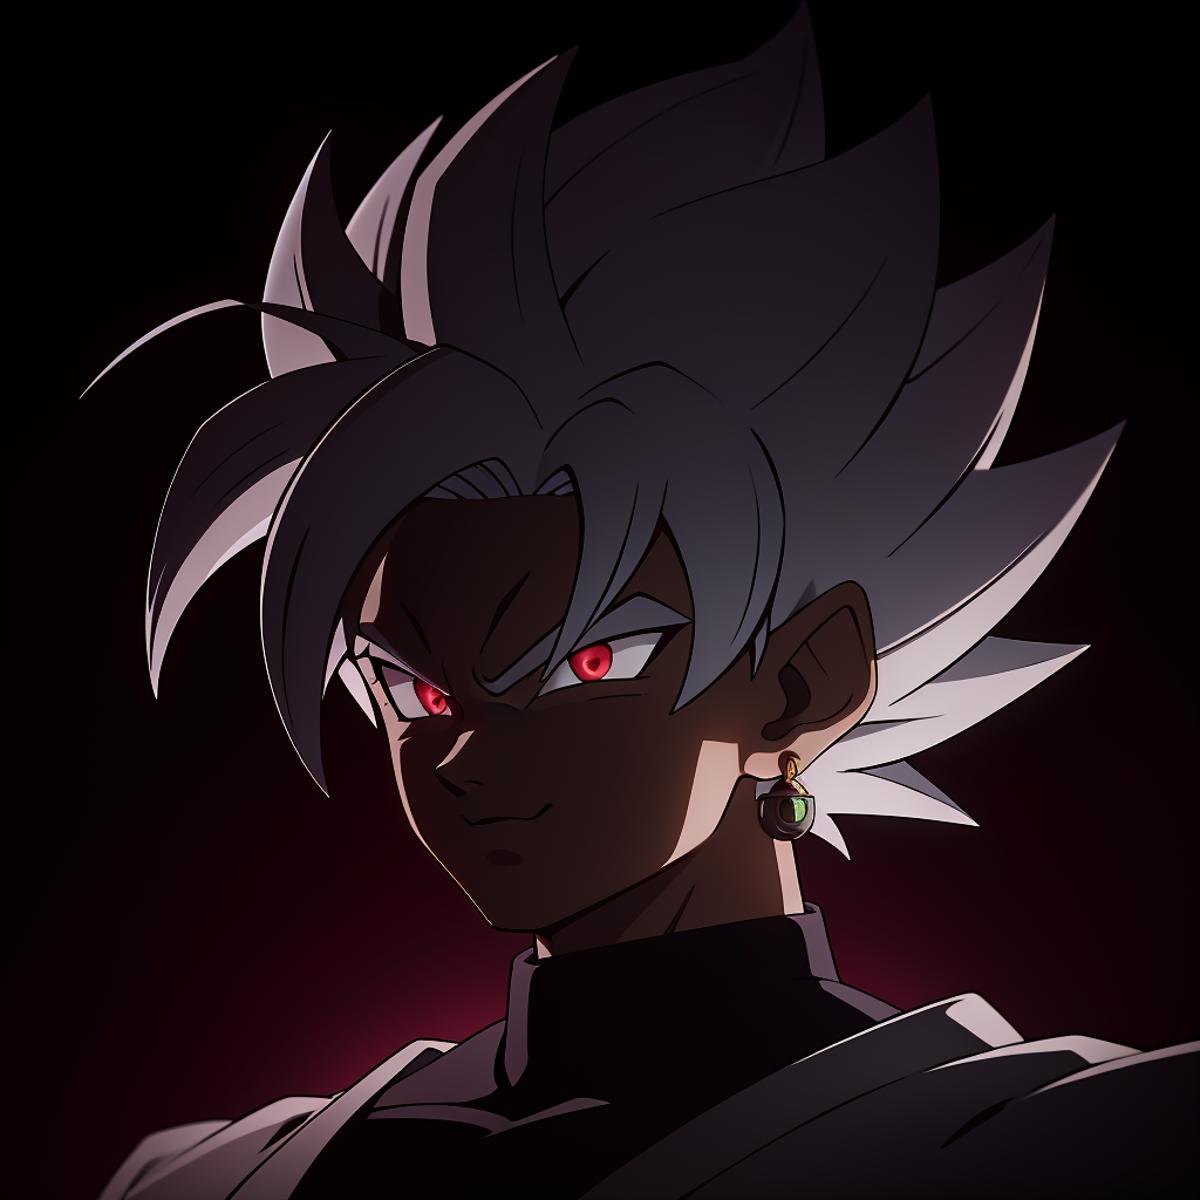 Goku Black Super Saiyan Rose image by infamous__fish